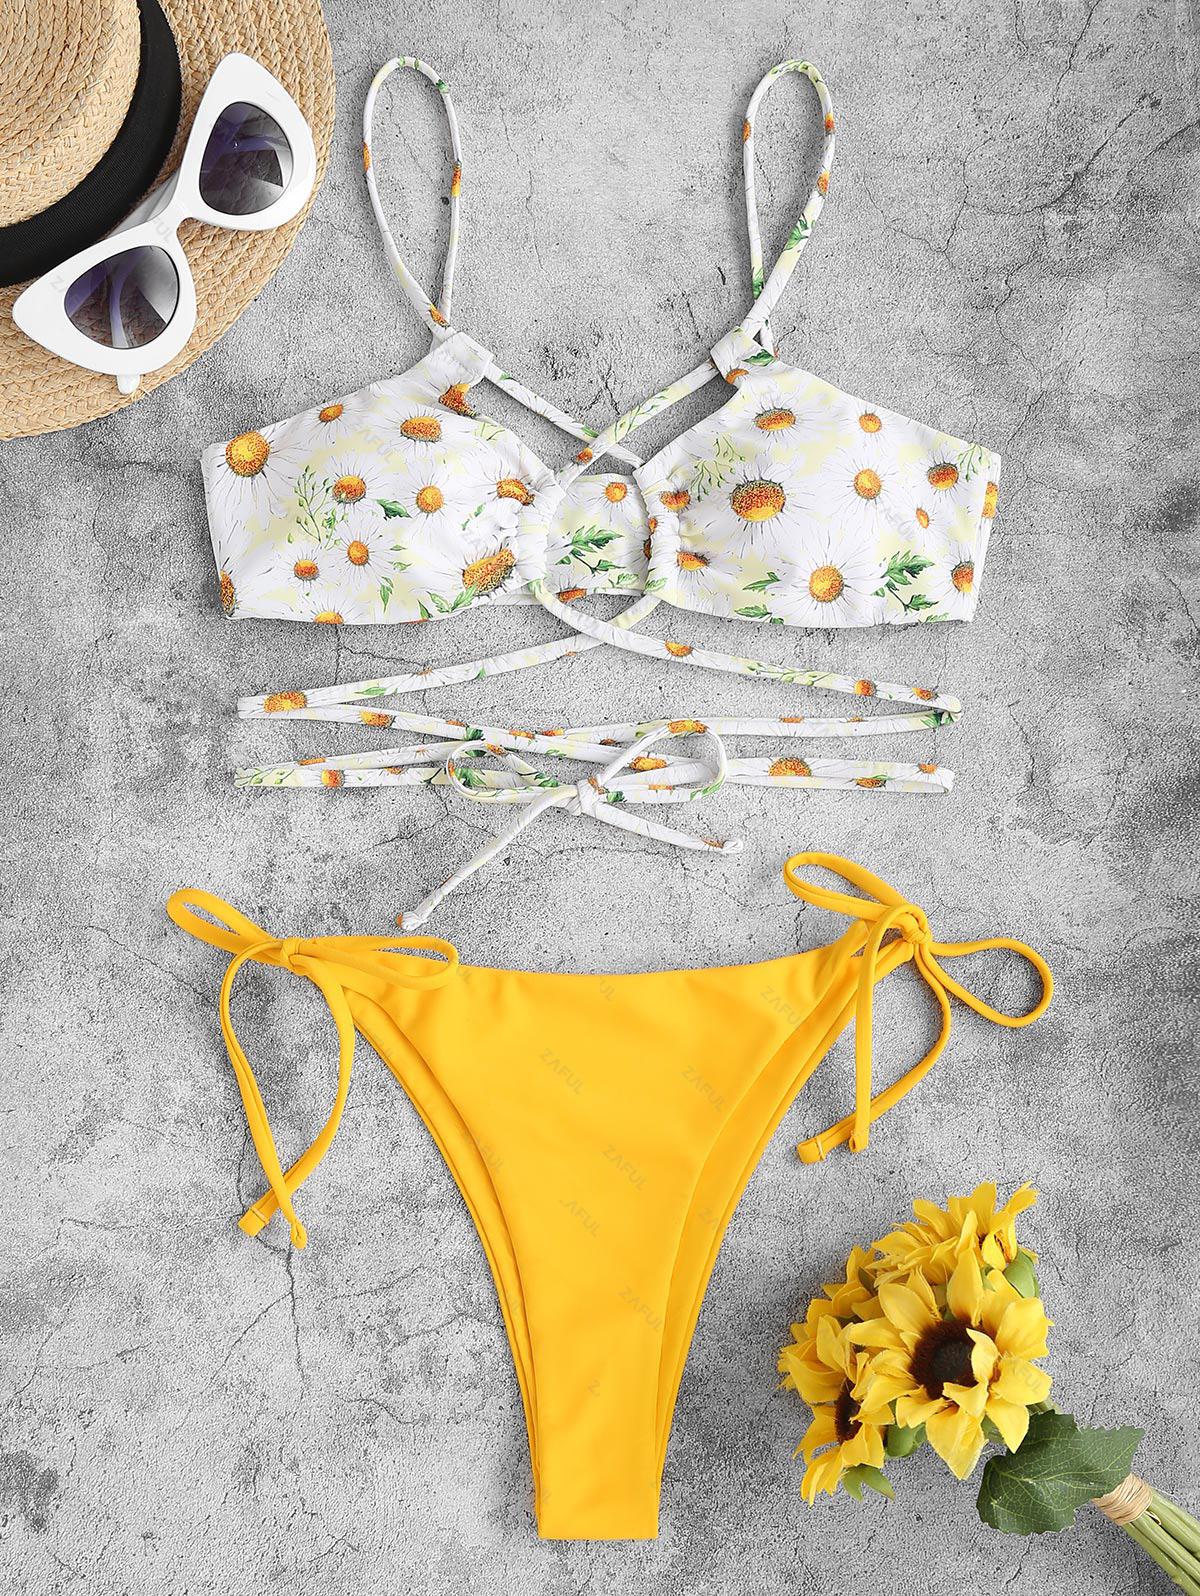 ZAFUL Daisy Lace Up Tie Side Floss Bikini Swimwear S Yellow